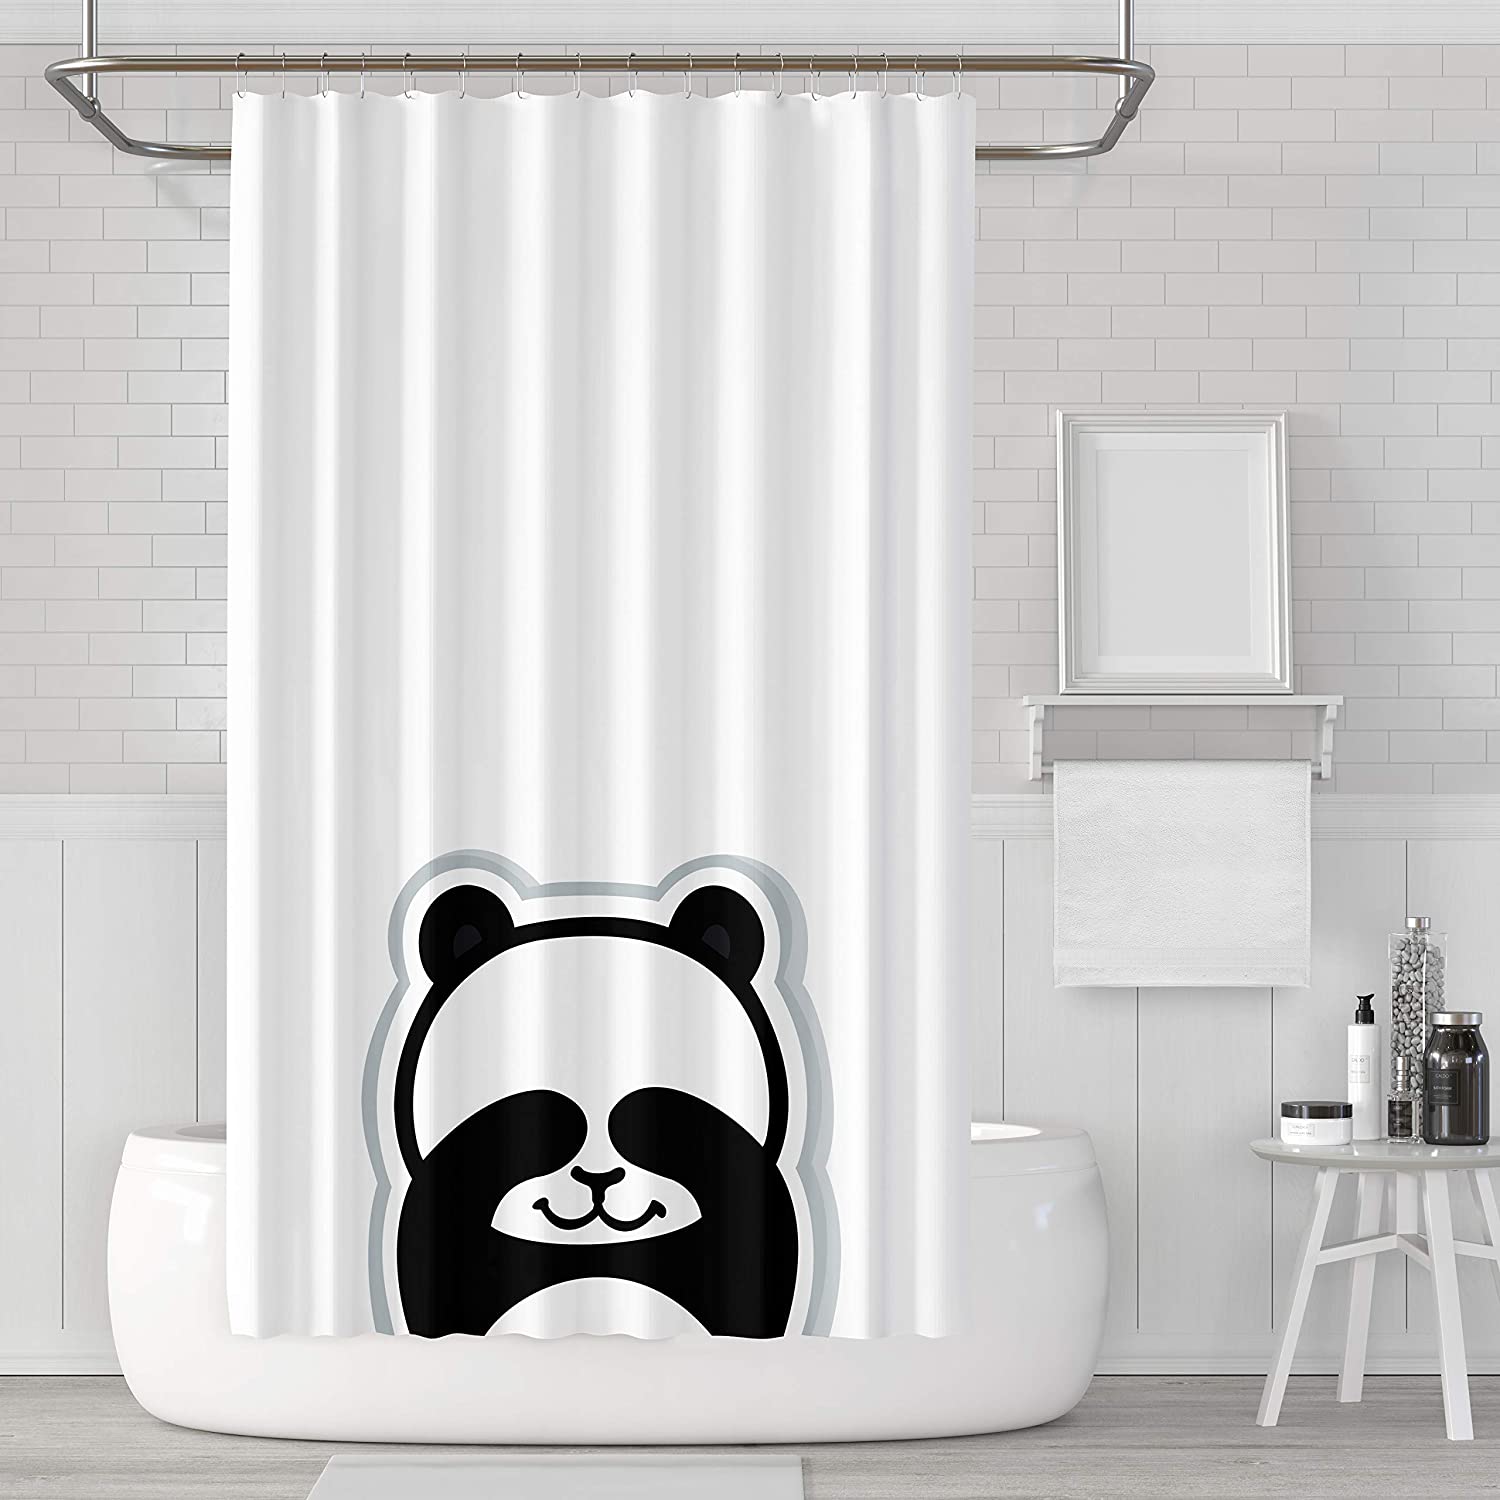 A Shy Shower Curtain Panda